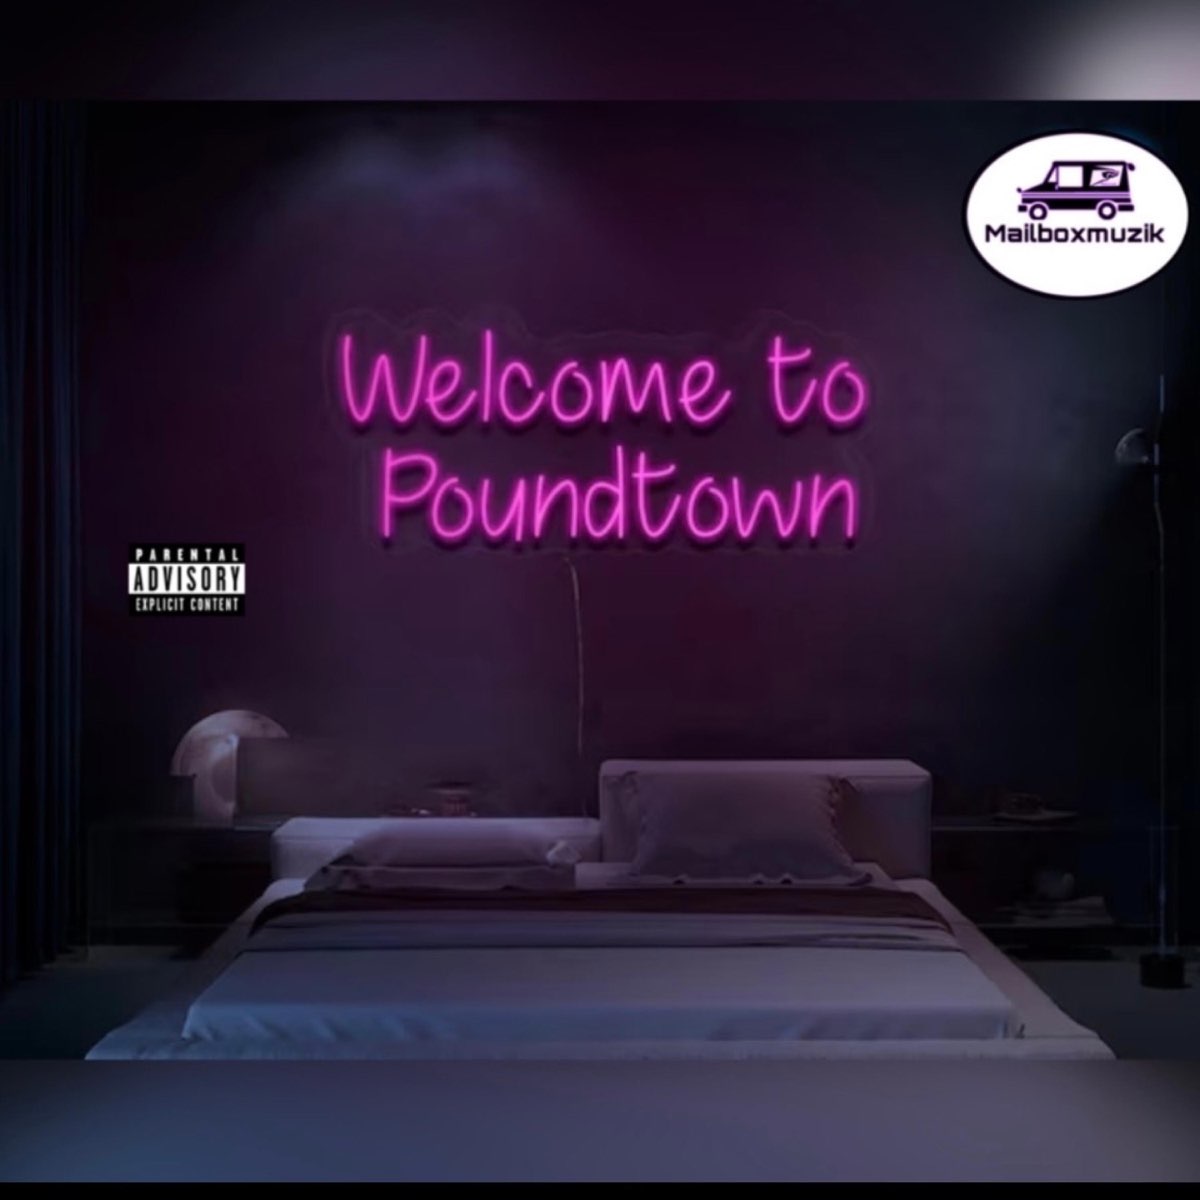 Pound Town - Single - Album by BakkdoeMoe - Apple Music